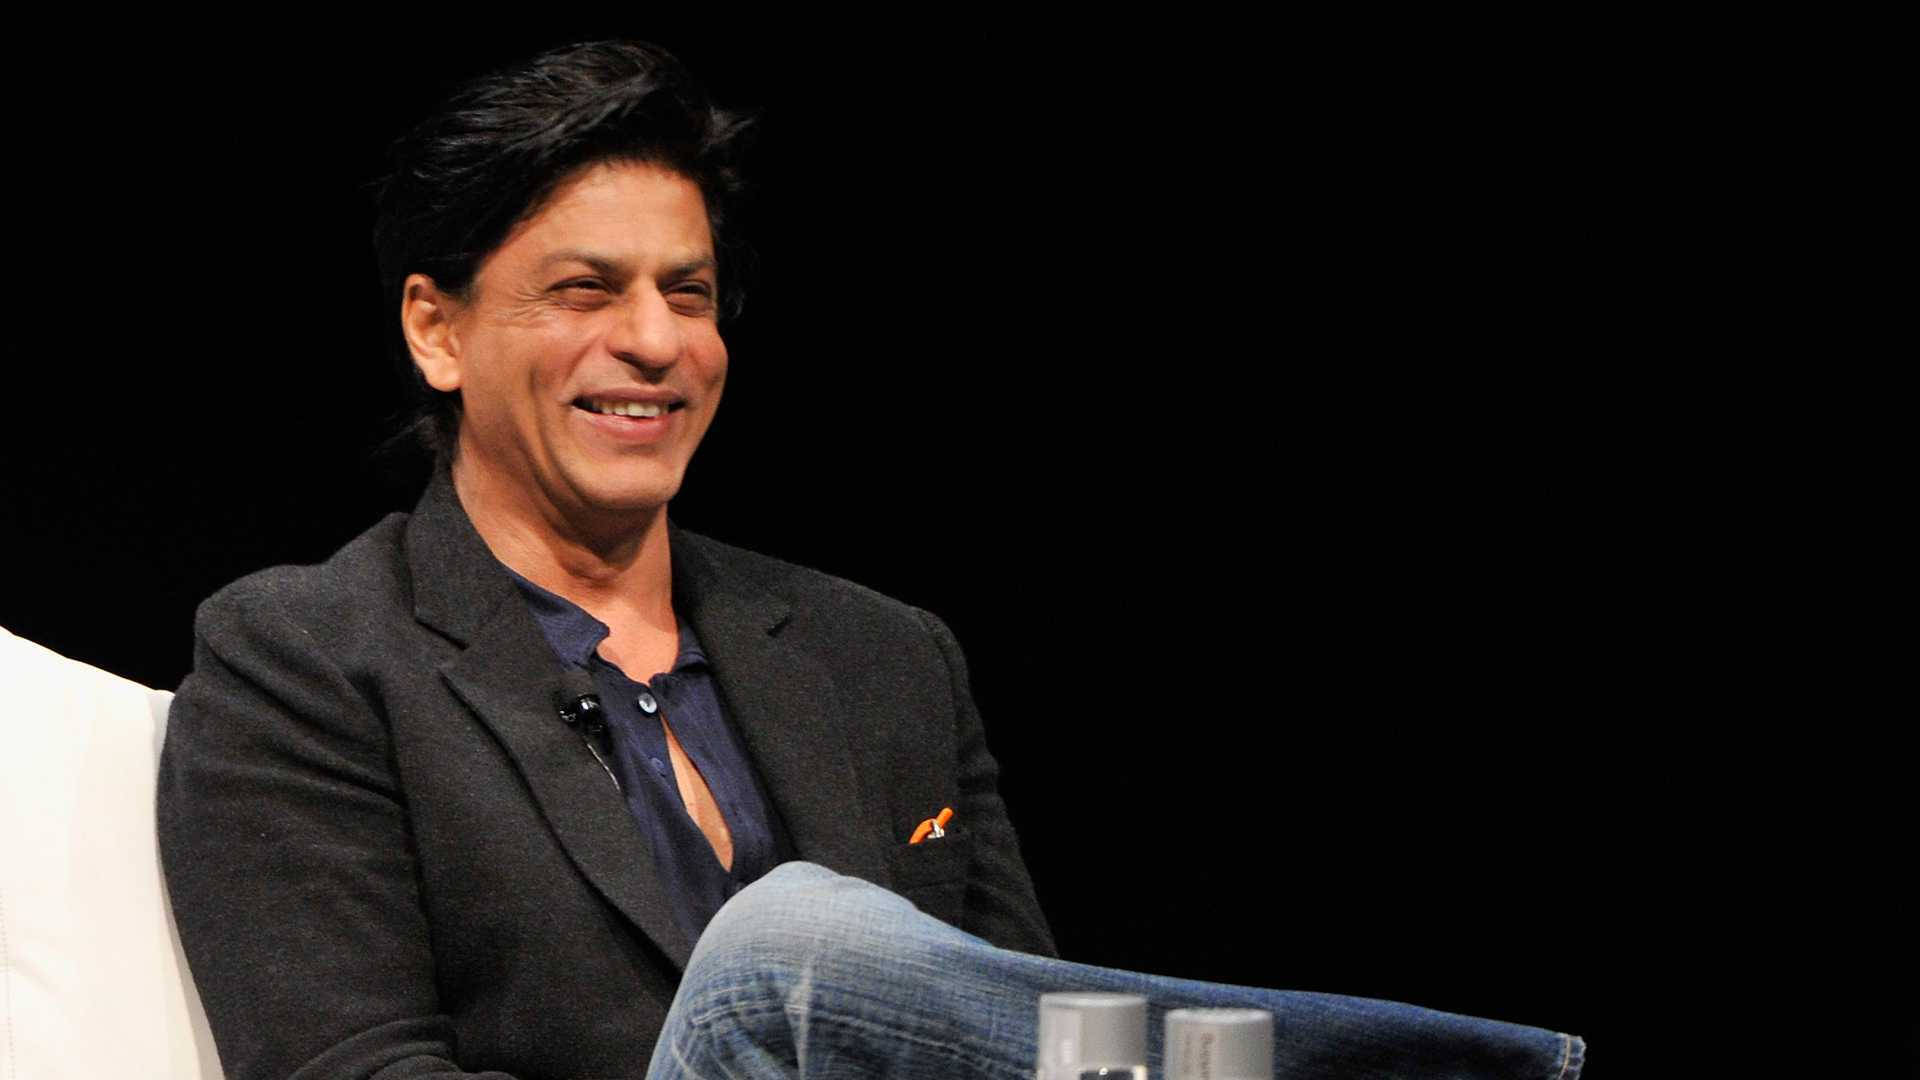 Shah Rukh Khan Iconic Smile Background